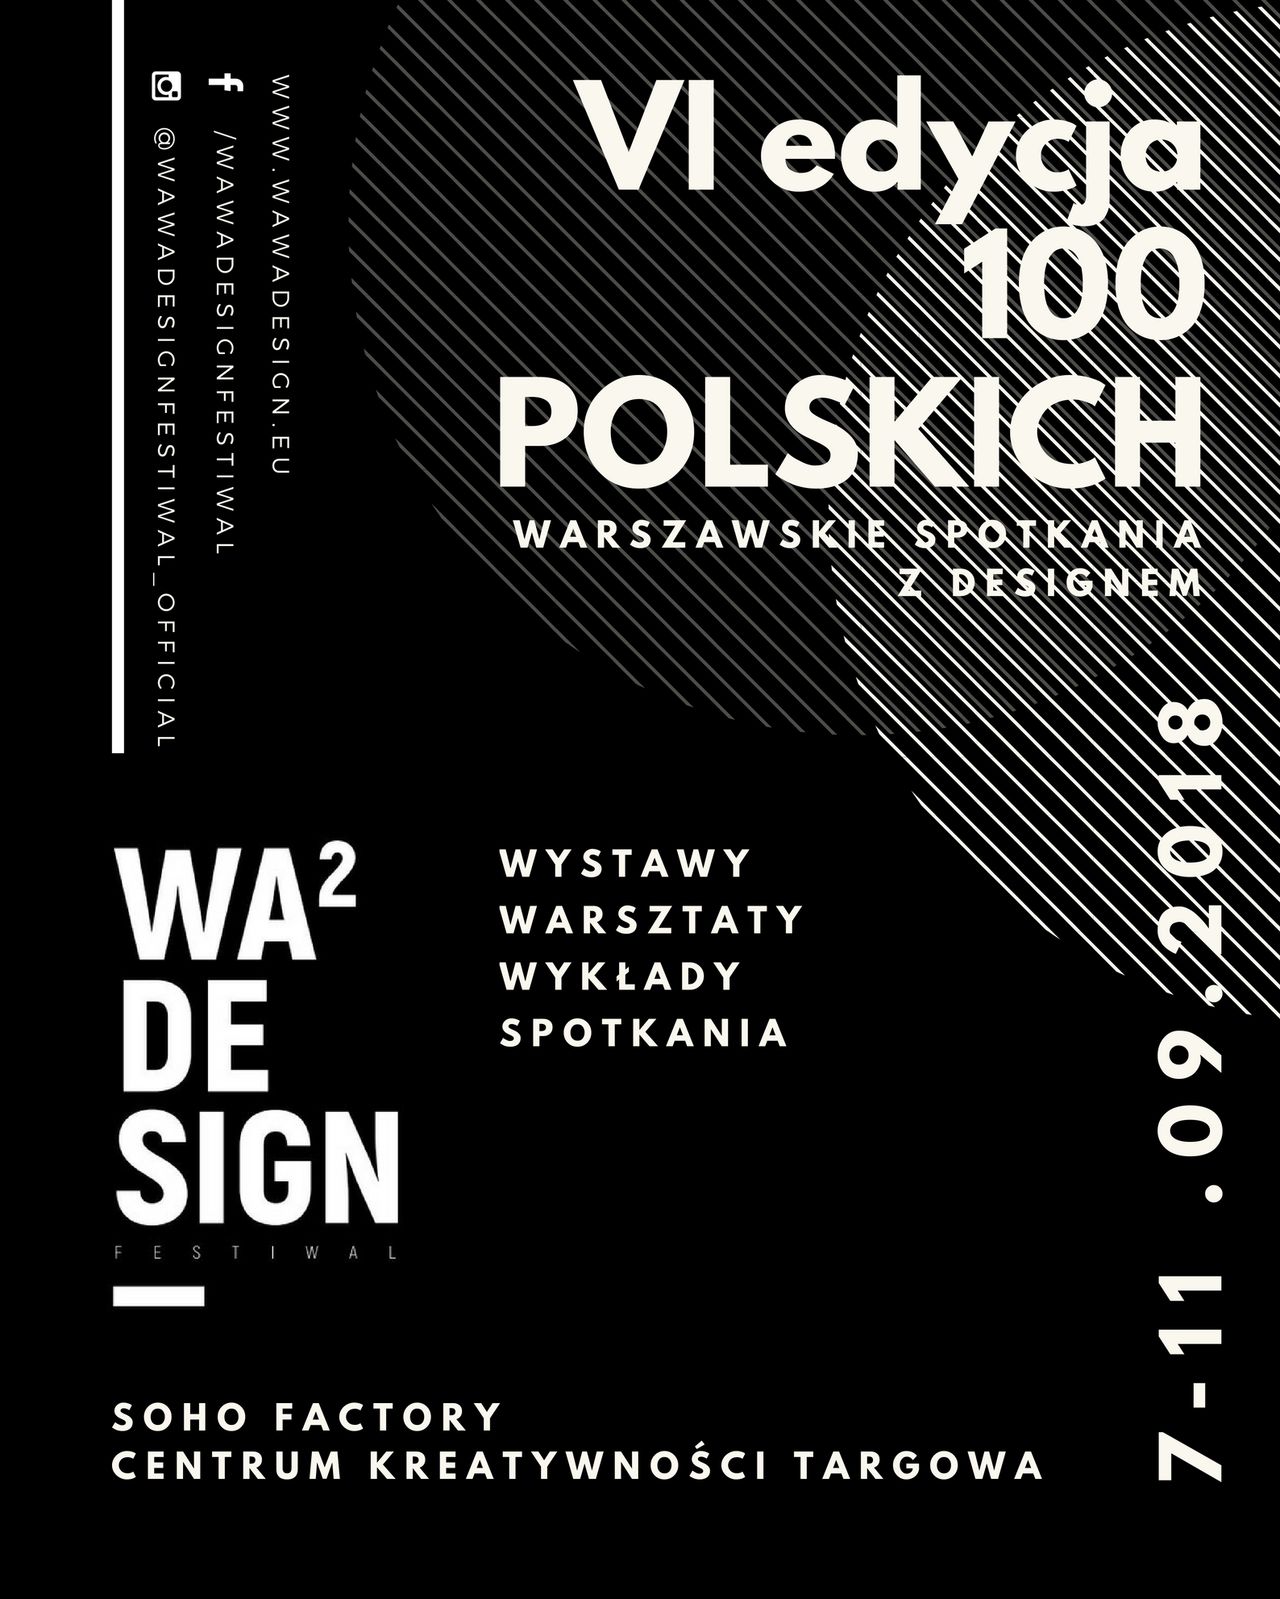 We wrześniu odbędzie się VI edycja wyjątkowego festiwalu designu w stolicy. Tym razem pod hasłem 100 POLSKICH.